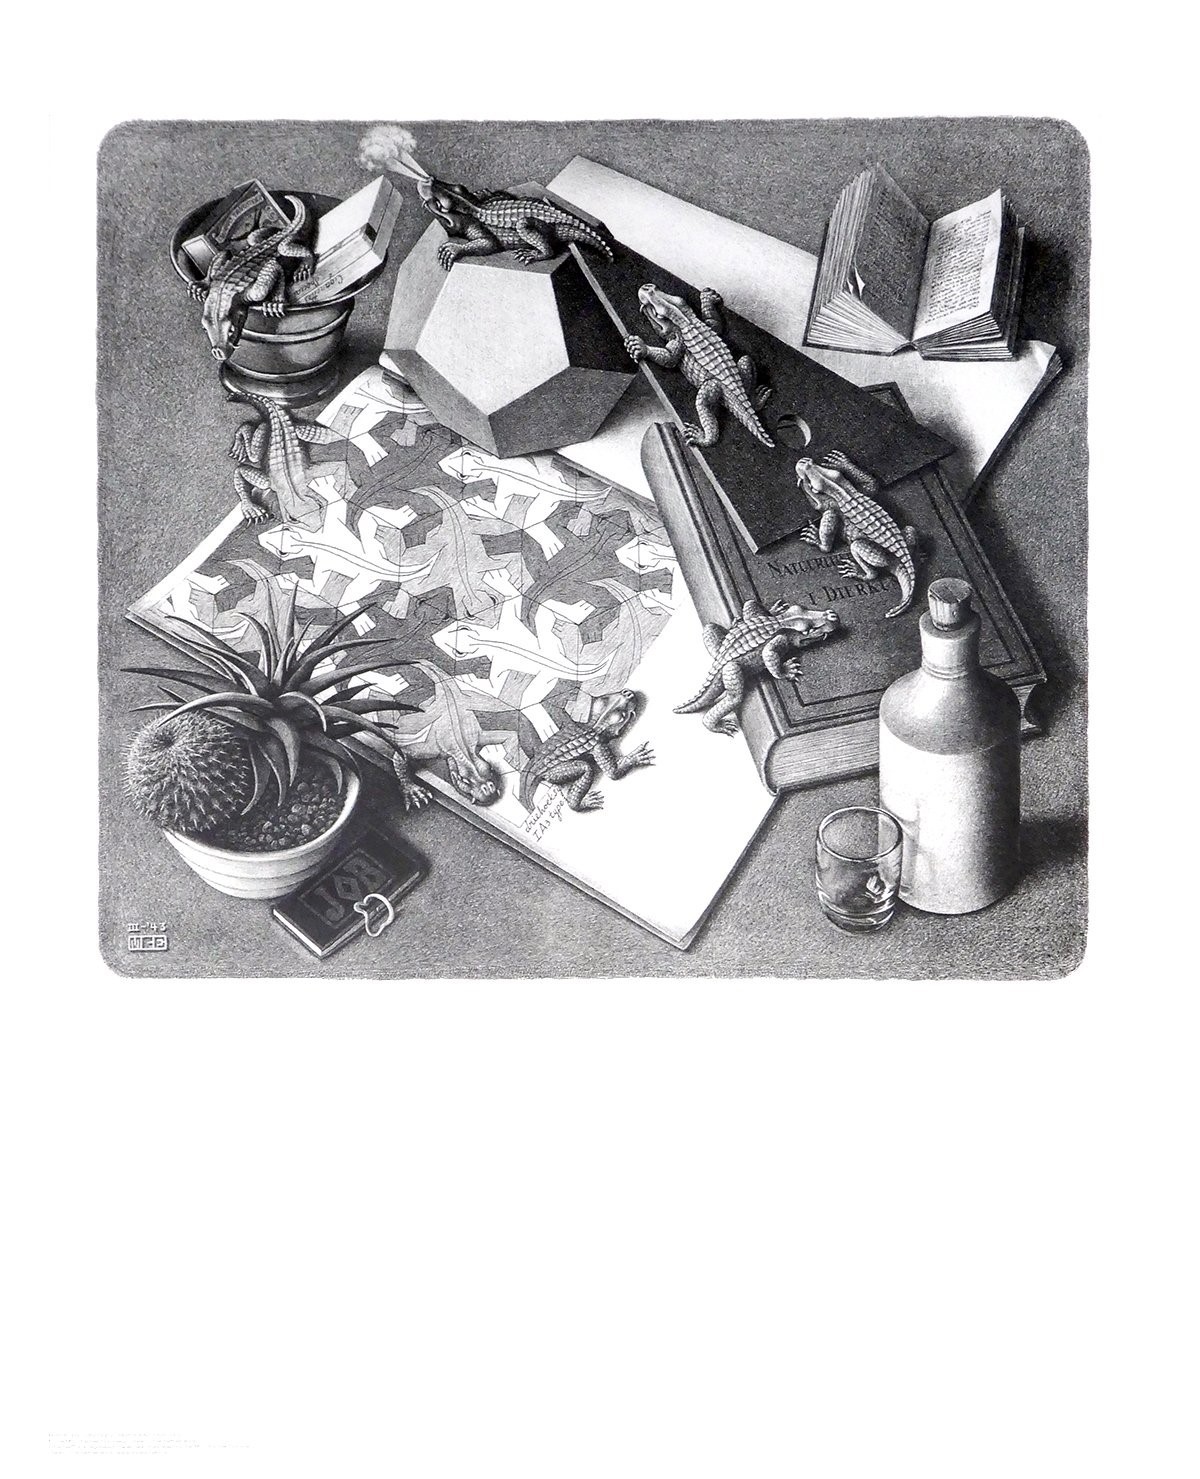 M. C. Escher, Reptilien (Stillleben, Echsen, Reptilien,  Irritation, Zeitgenössischer Surrealismus, Treppenhaus, Wohnzimmer, schwarz/weiß)